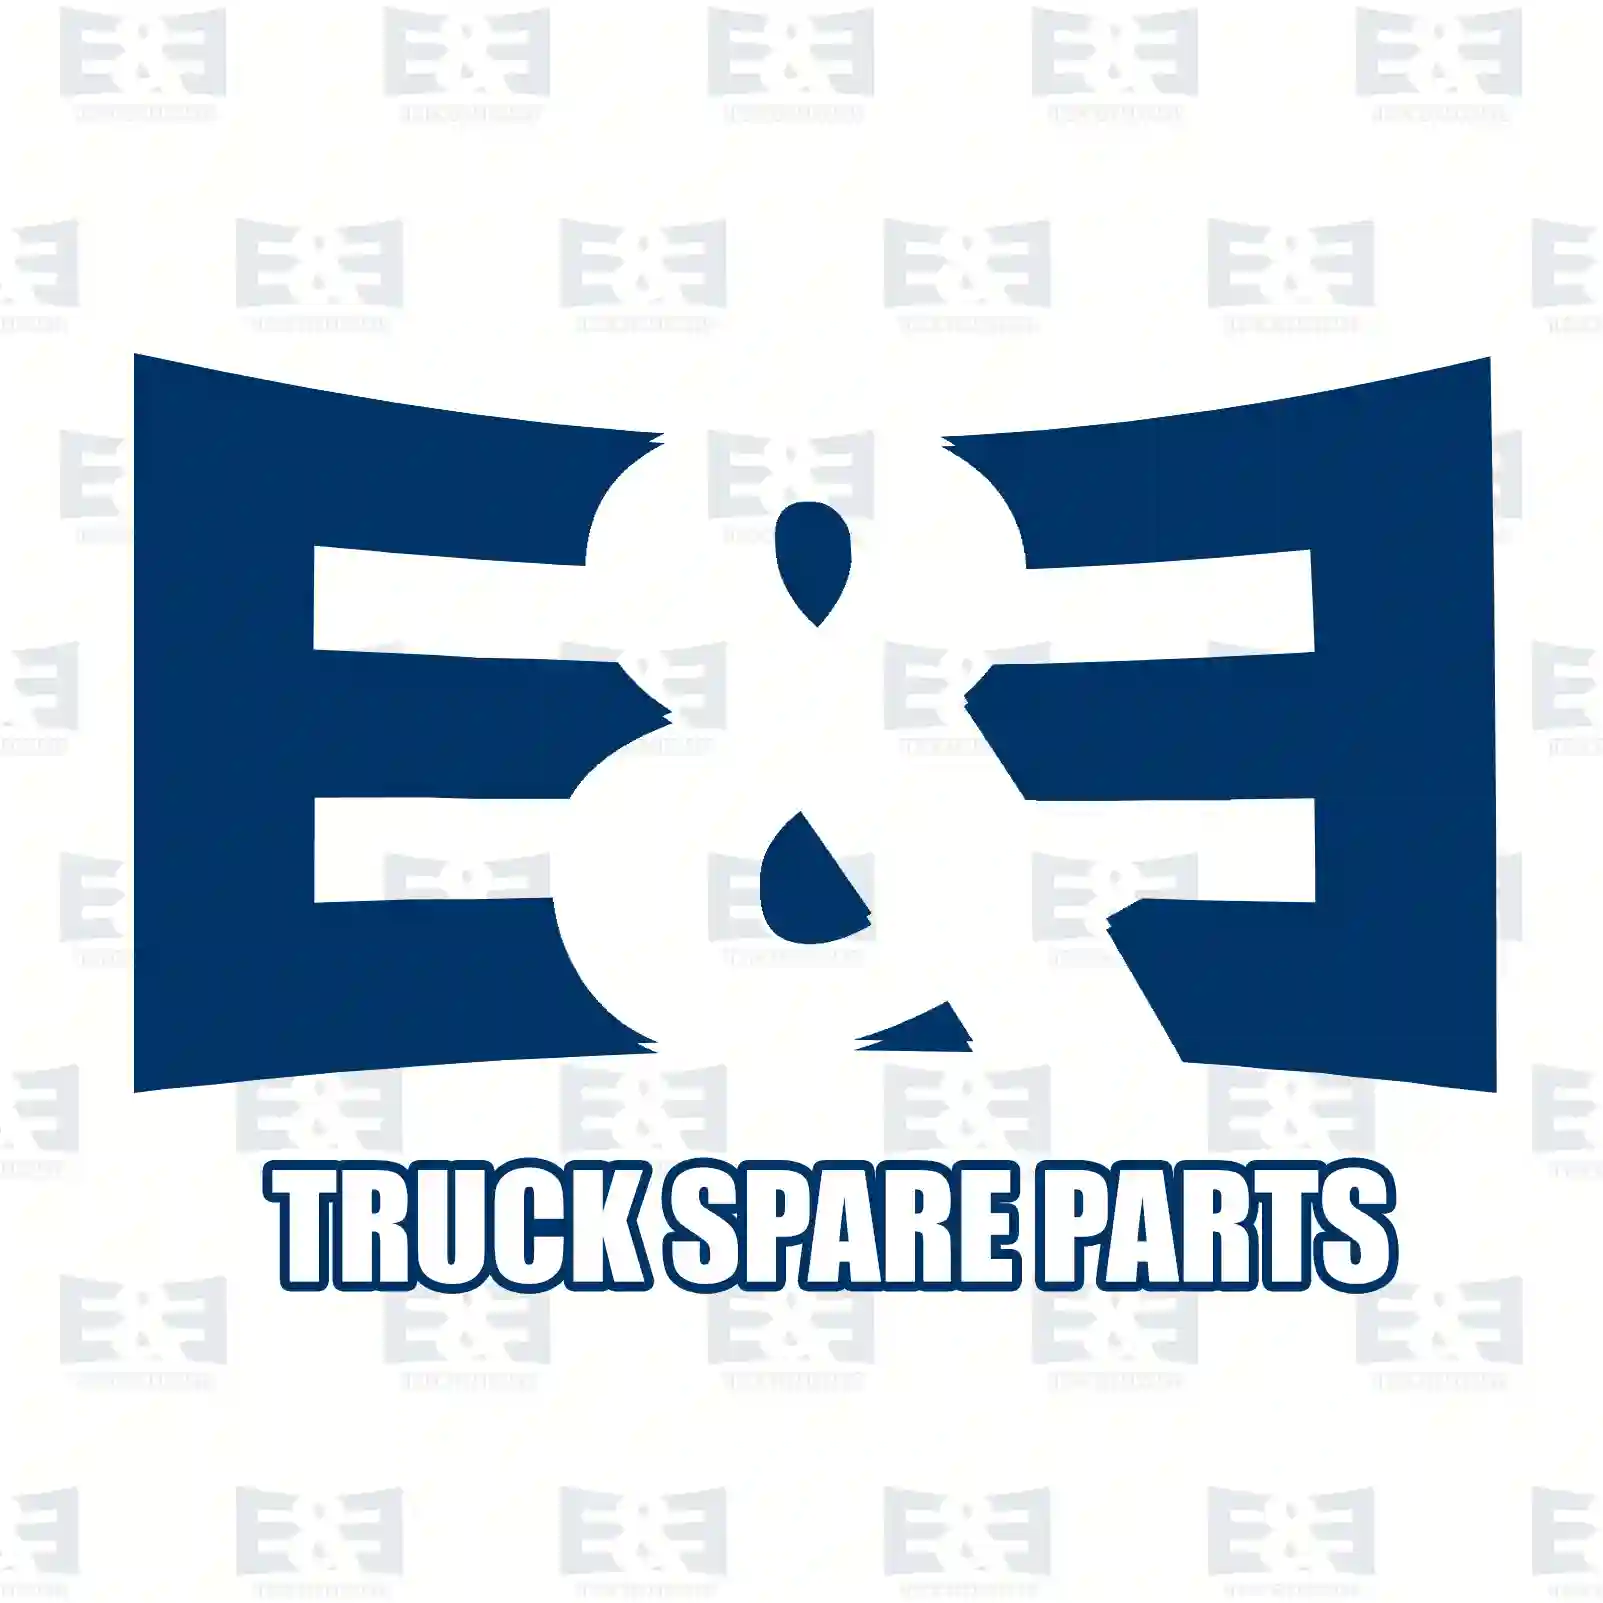 Air tank, 2E2294796, 1519220, 5801478284, 5021170384, , ||  2E2294796 E&E Truck Spare Parts | Truck Spare Parts, Auotomotive Spare Parts Air tank, 2E2294796, 1519220, 5801478284, 5021170384, , ||  2E2294796 E&E Truck Spare Parts | Truck Spare Parts, Auotomotive Spare Parts